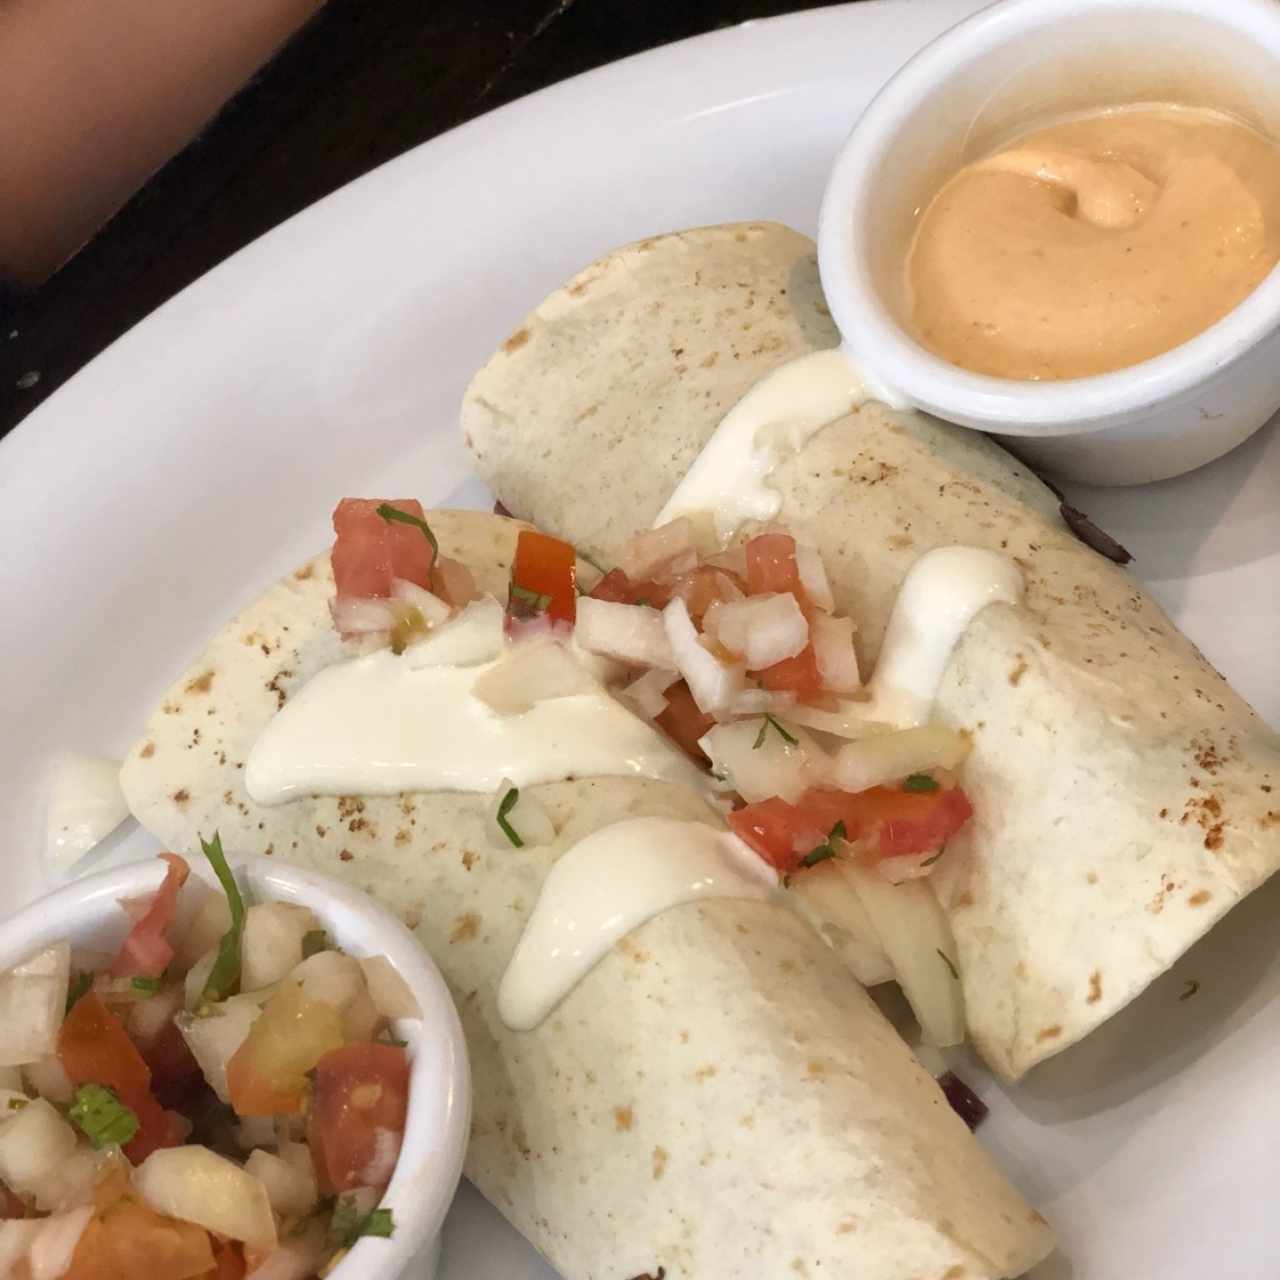 Burritos 